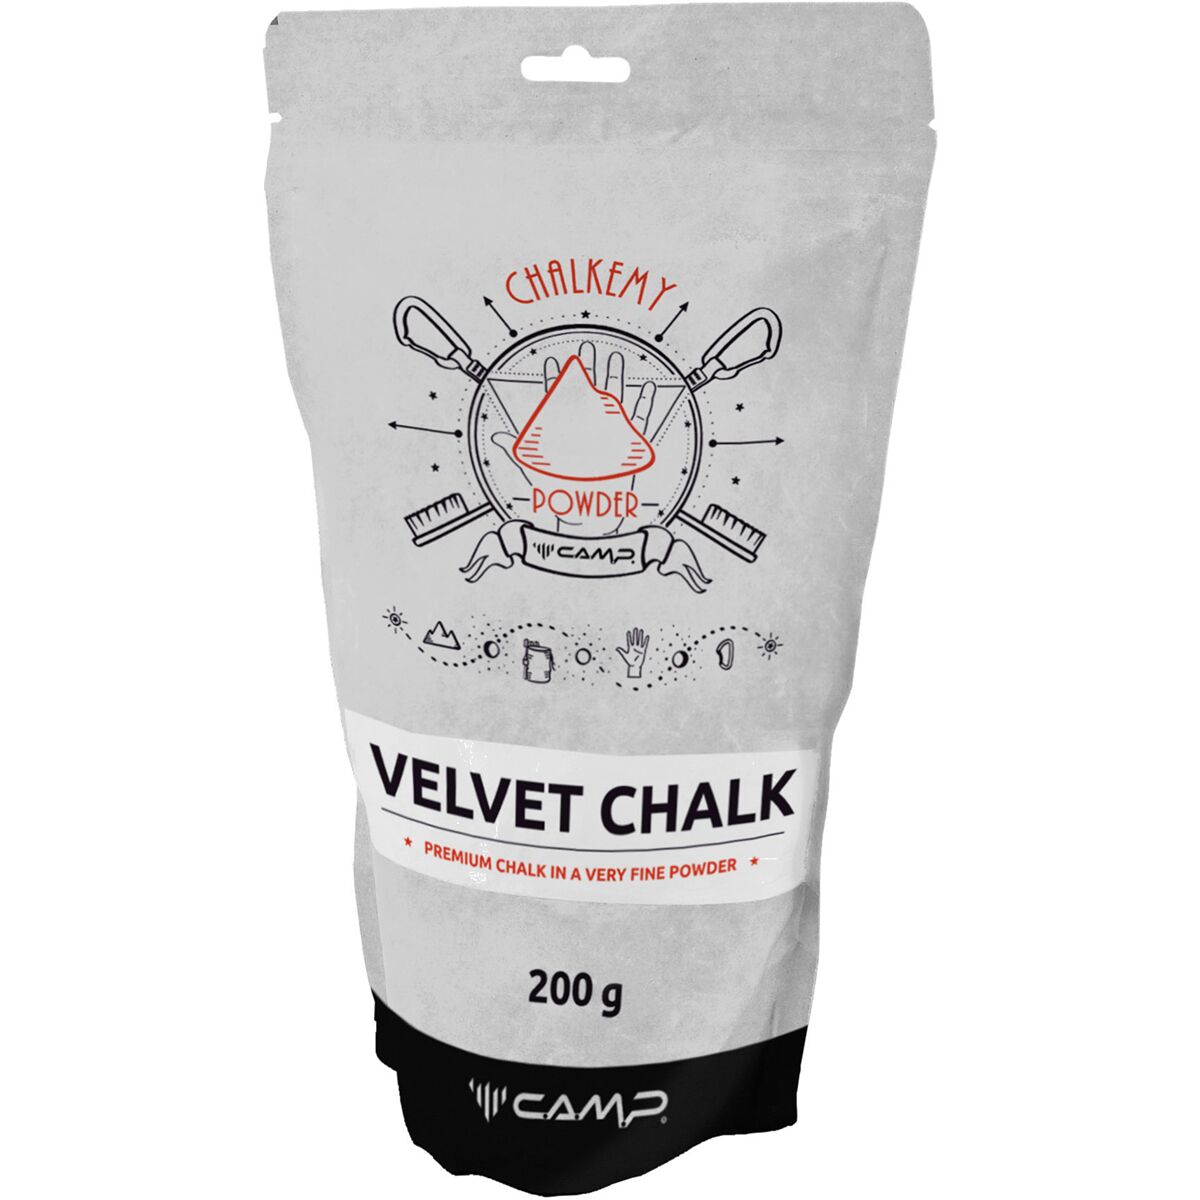 CAMP USA Velvet Chalk